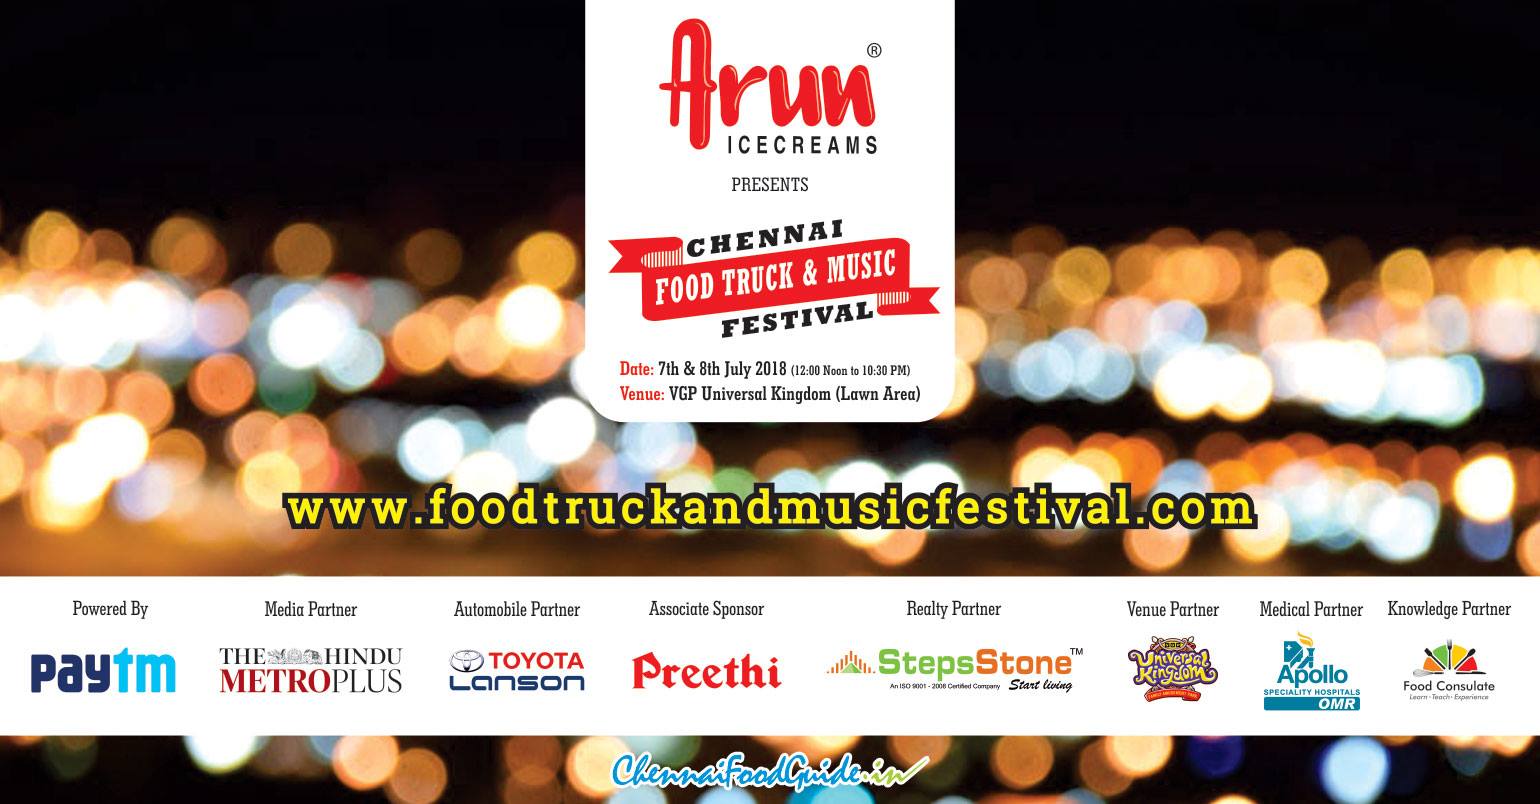 Chennai Food Truck & Music Festival